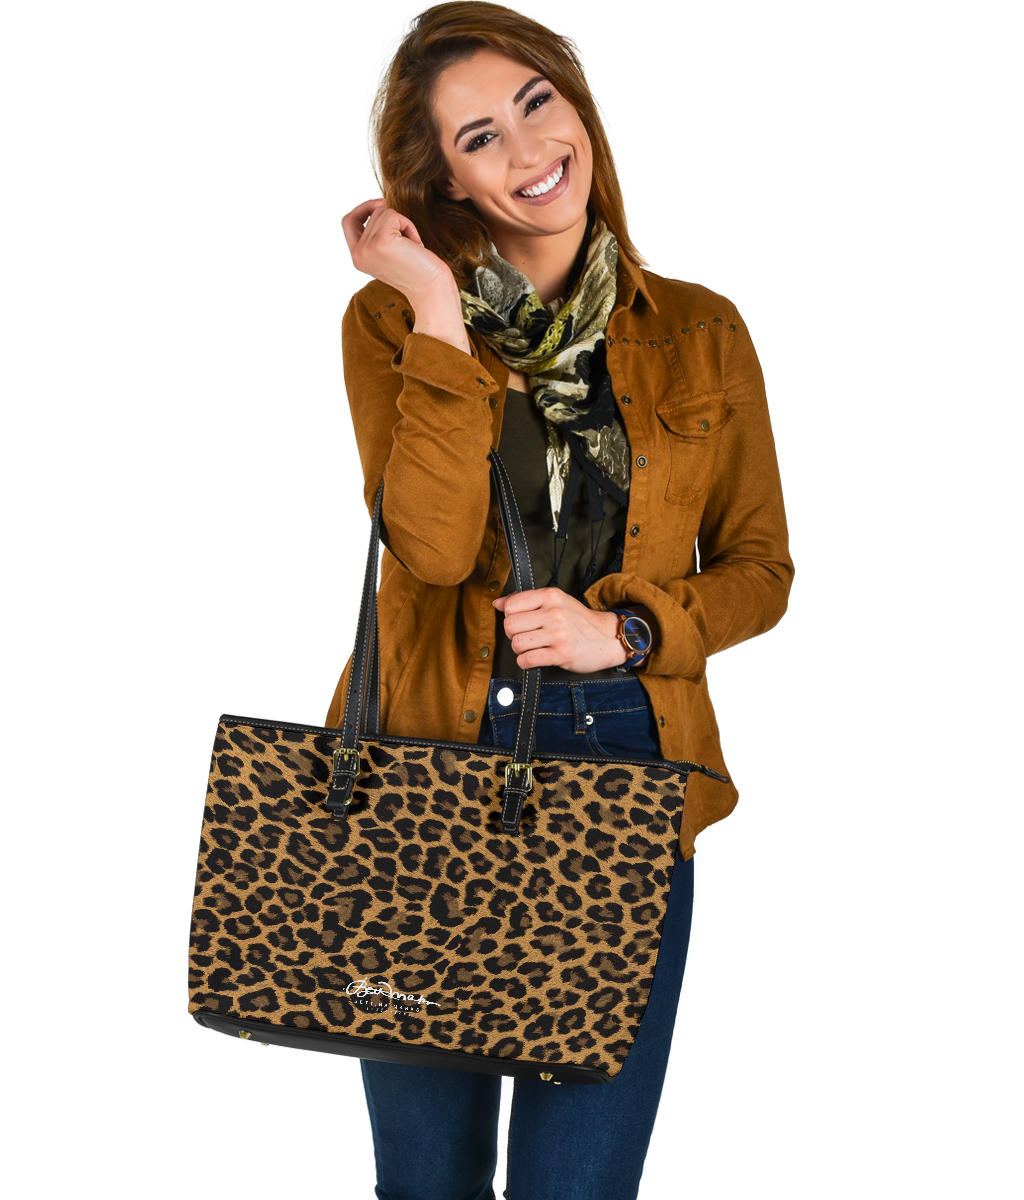 Leopard Large Tote Bag